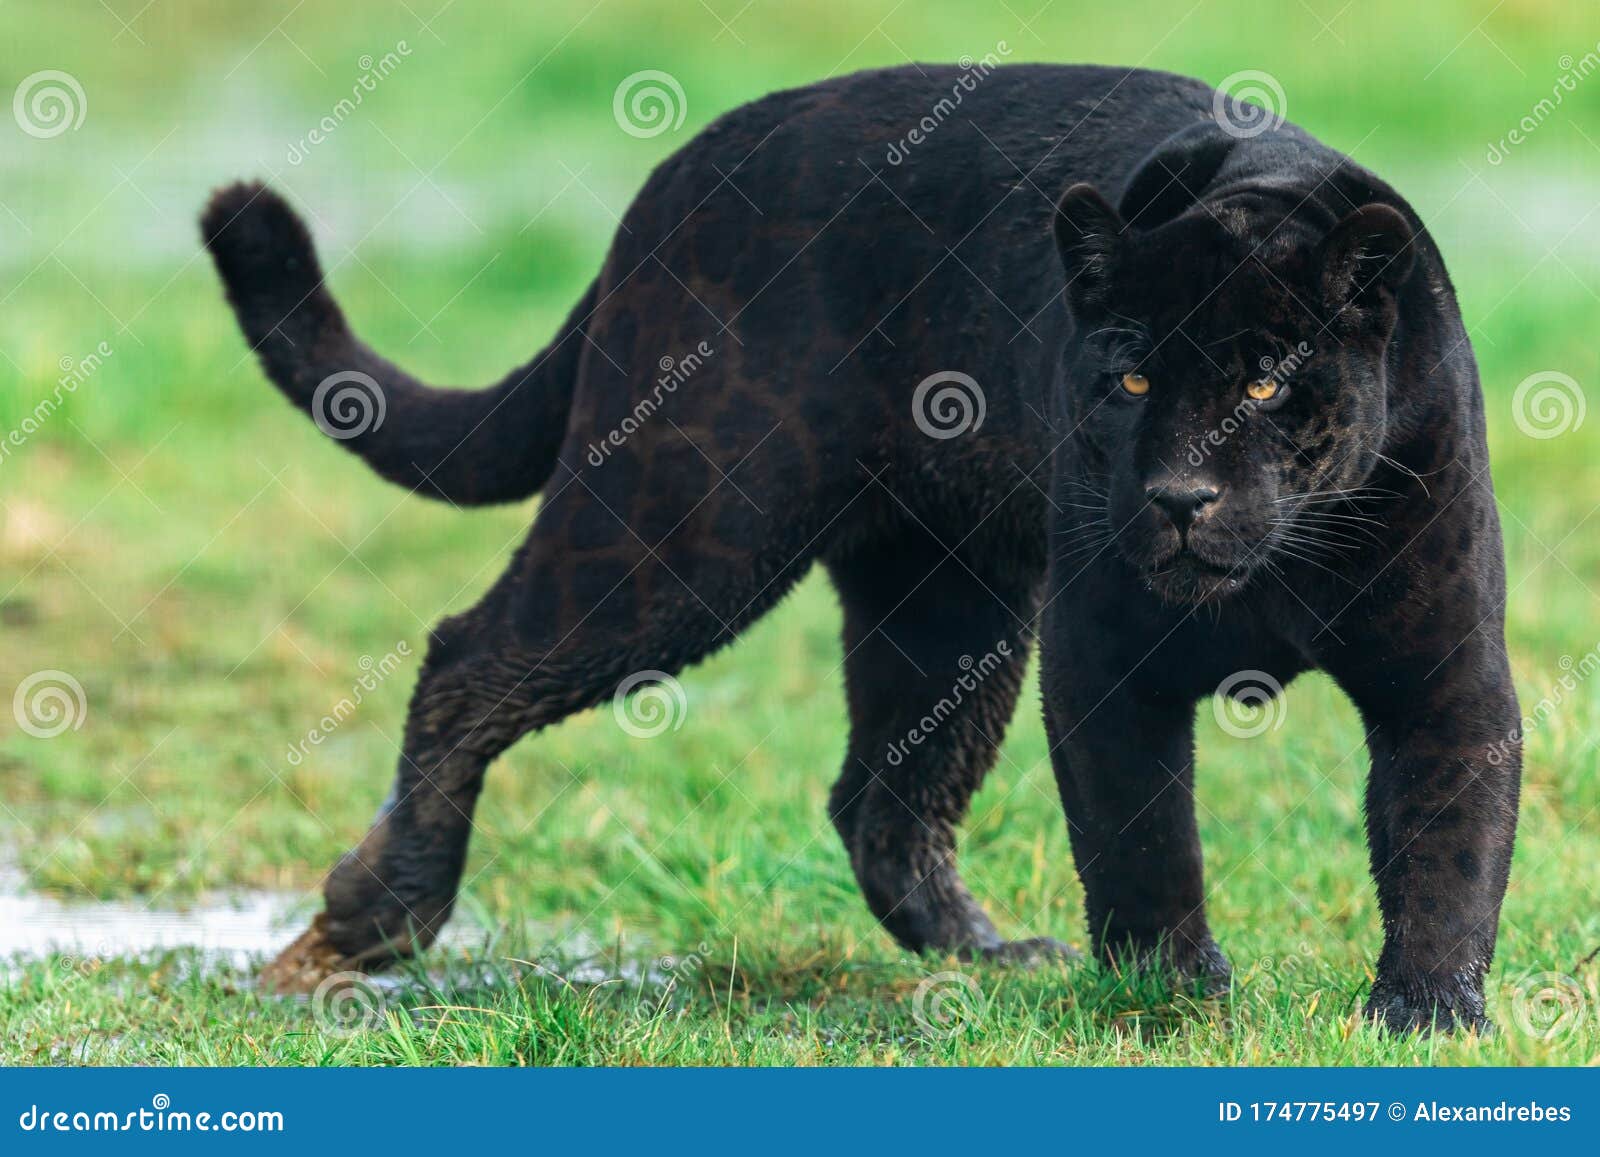 Afbeelding Van Een Zwarte Jaguar In Het Bos Stock Afbeelding - Image Of  Samenvatting, Gevaarlijk: 174775497